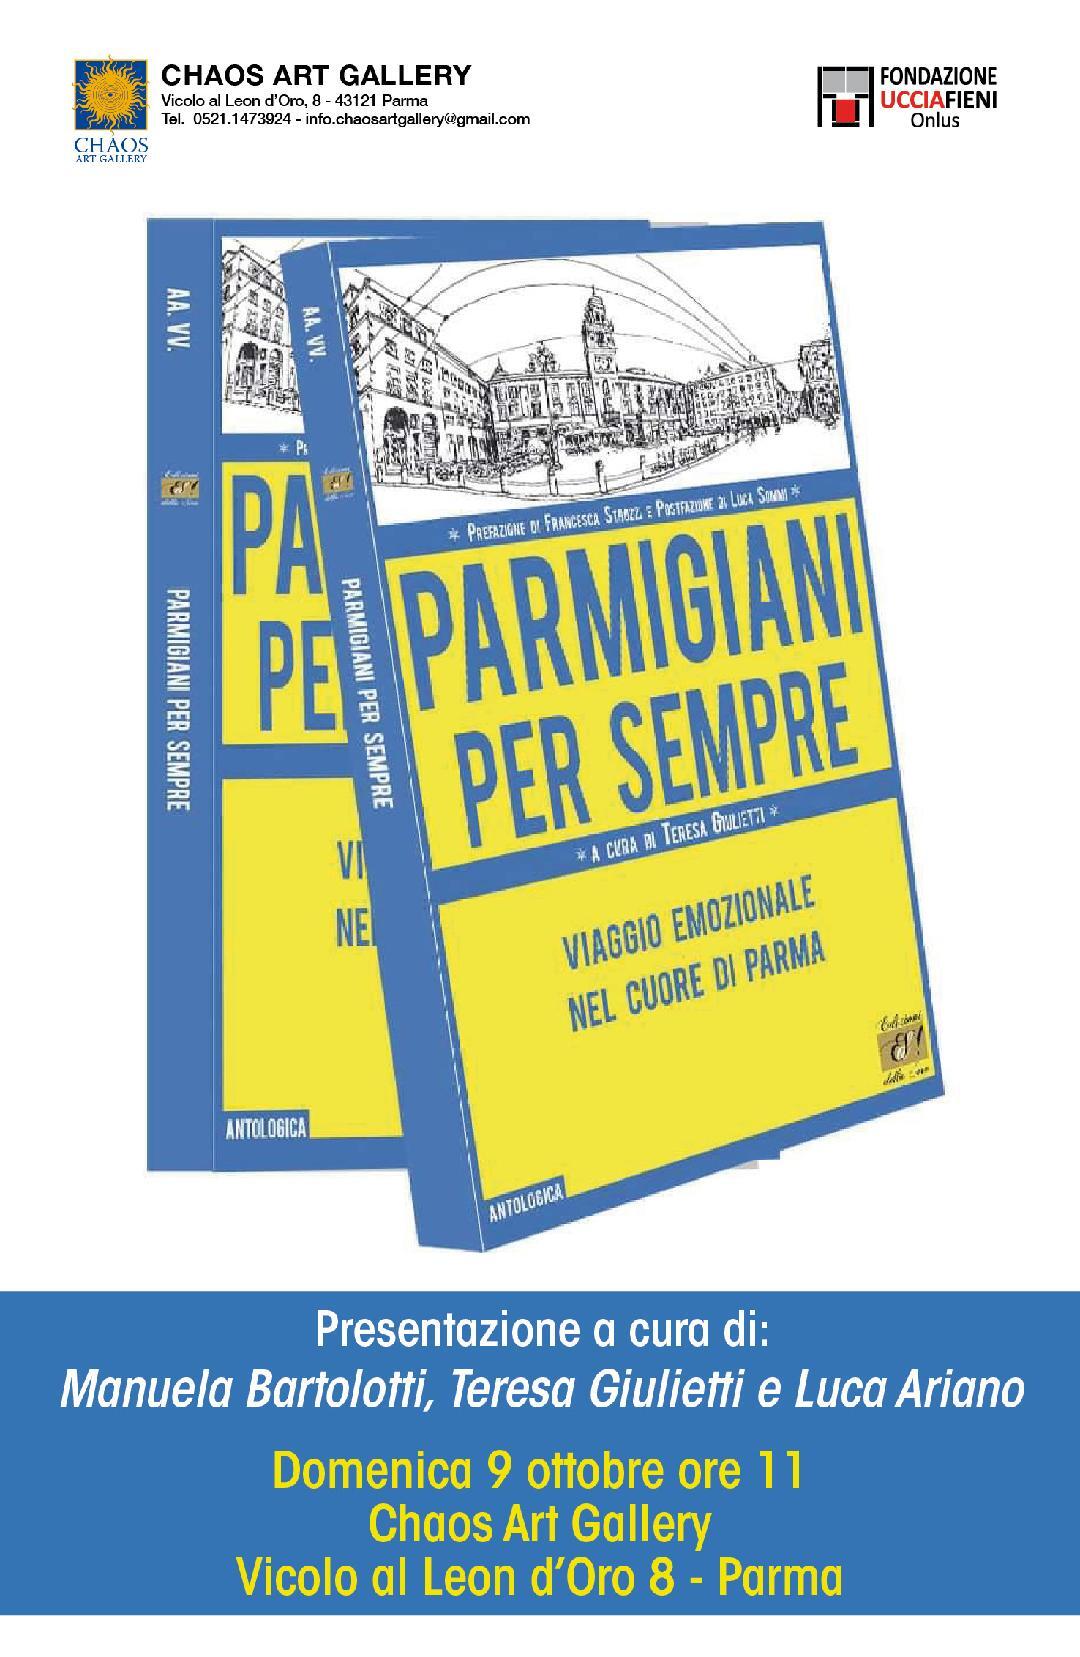 Presentazione del libro “Parmigiani per sempre” a cura di Teresa Giulietti